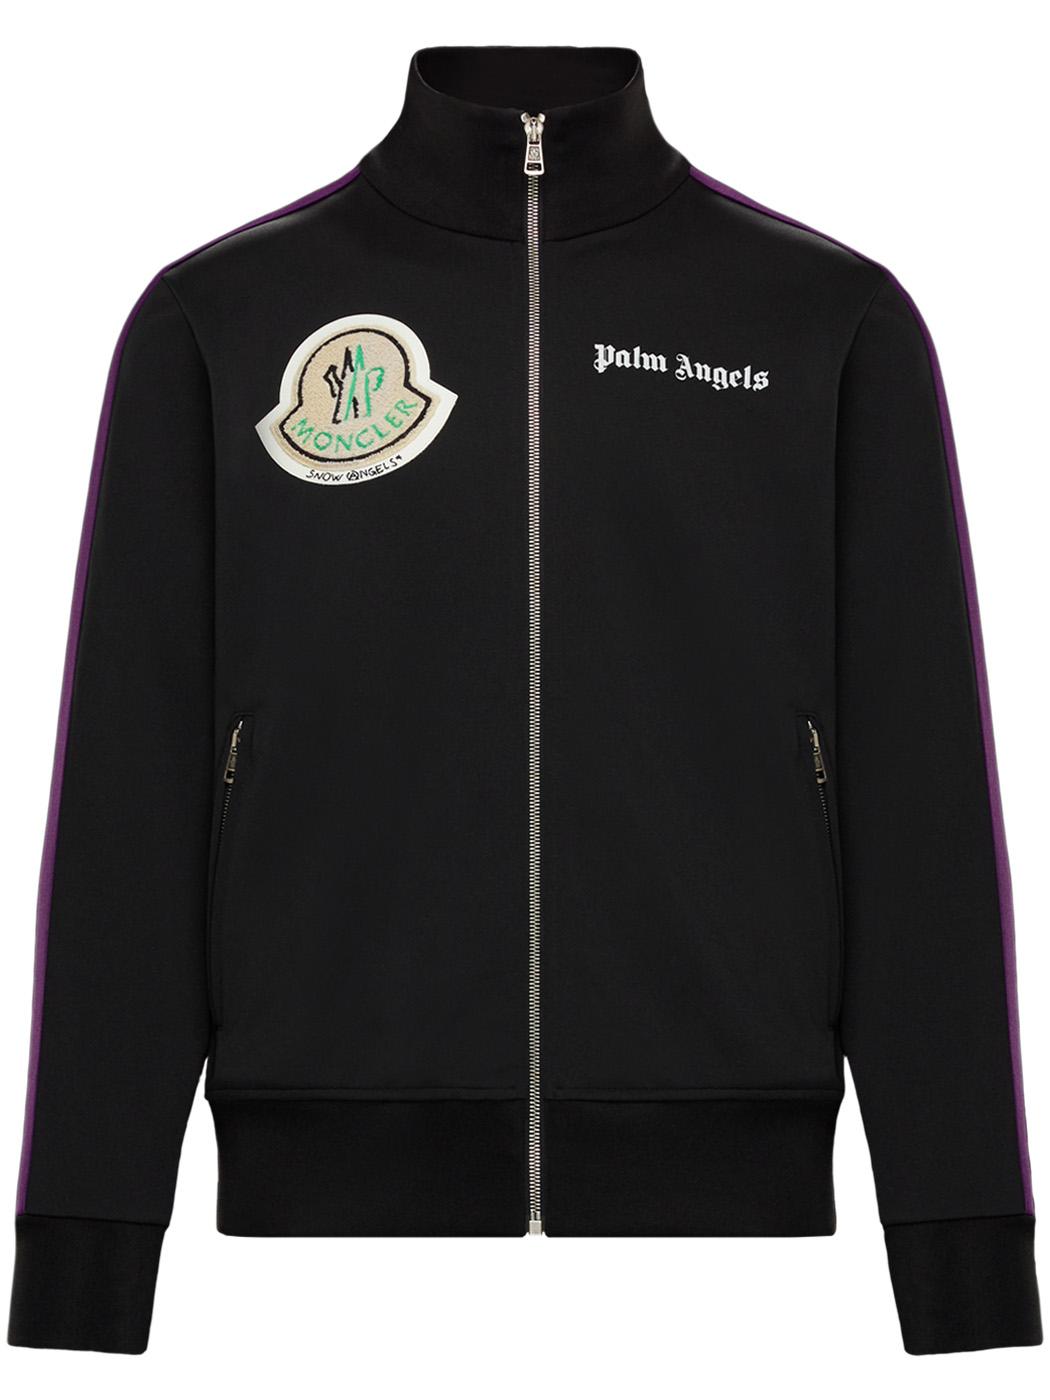 Moncler Genius 8 Moncler Palm Angels Black Track Jacket for Men | Lyst UK